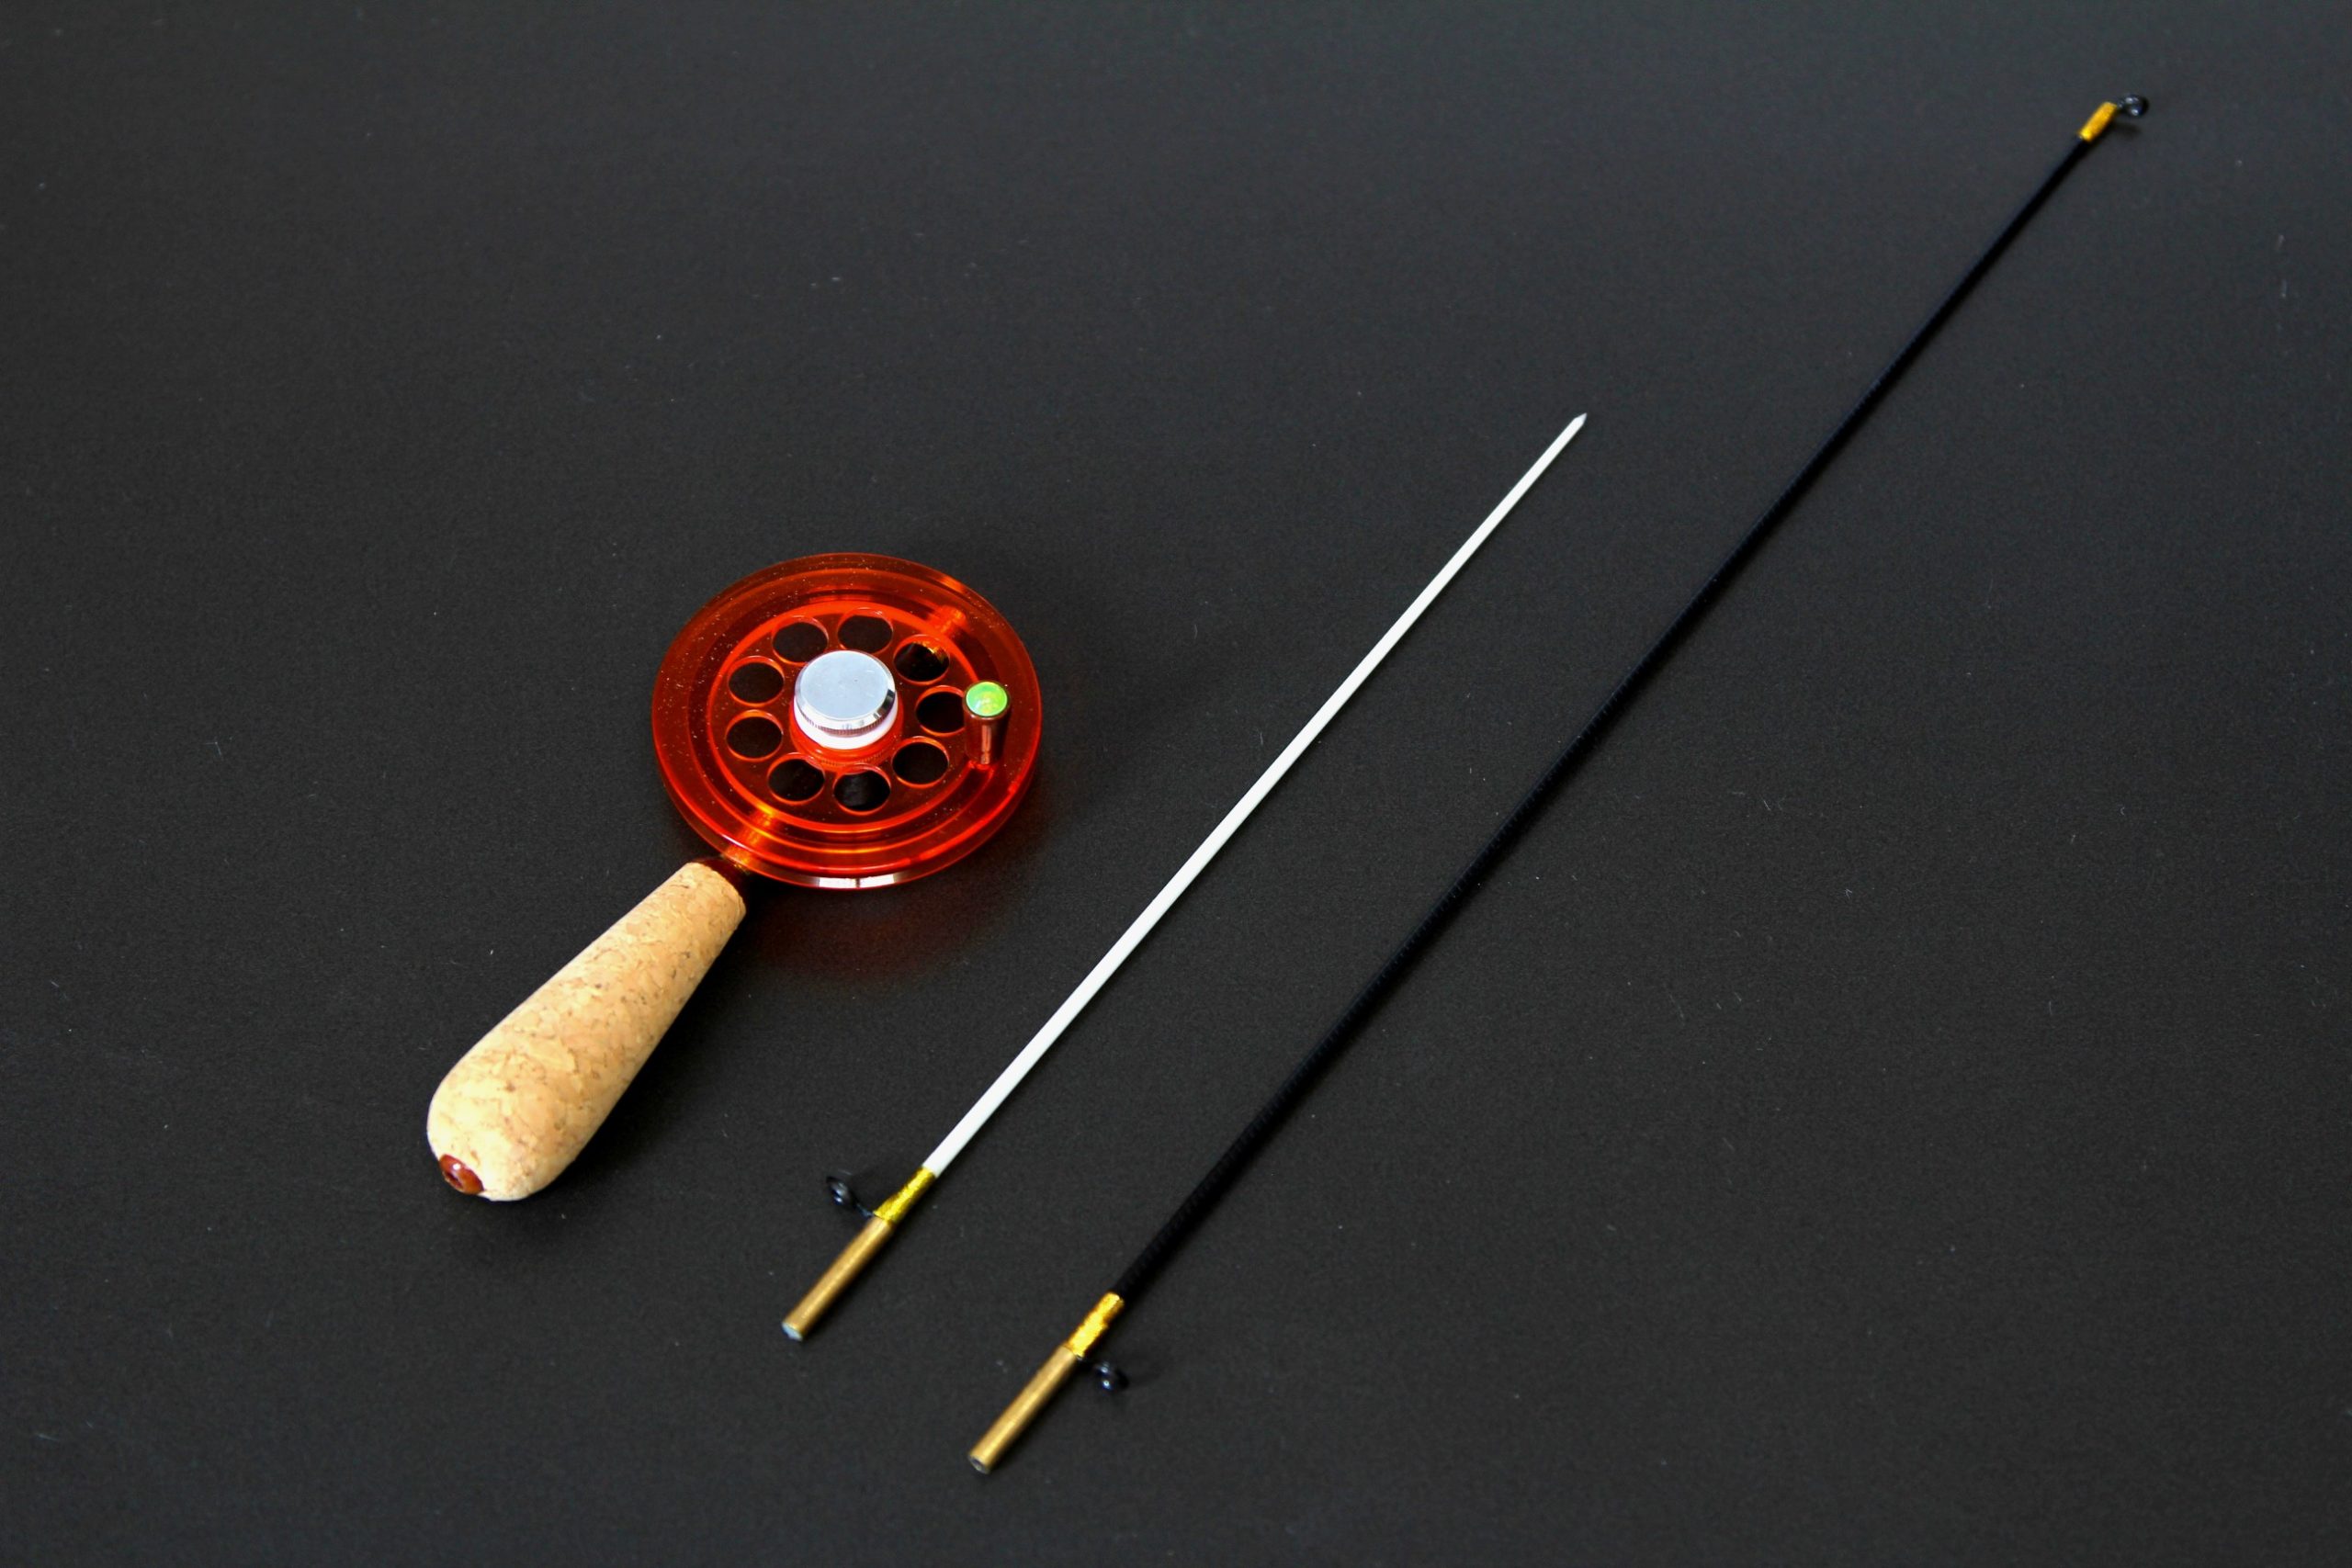 Универсальная зимняя удочка Артуда Трио L, с магнитом, катушкой увеличенного диаметра и двумя сменными хлыстиками, подходящая для зимней рыбалки на самую разную рыбу.